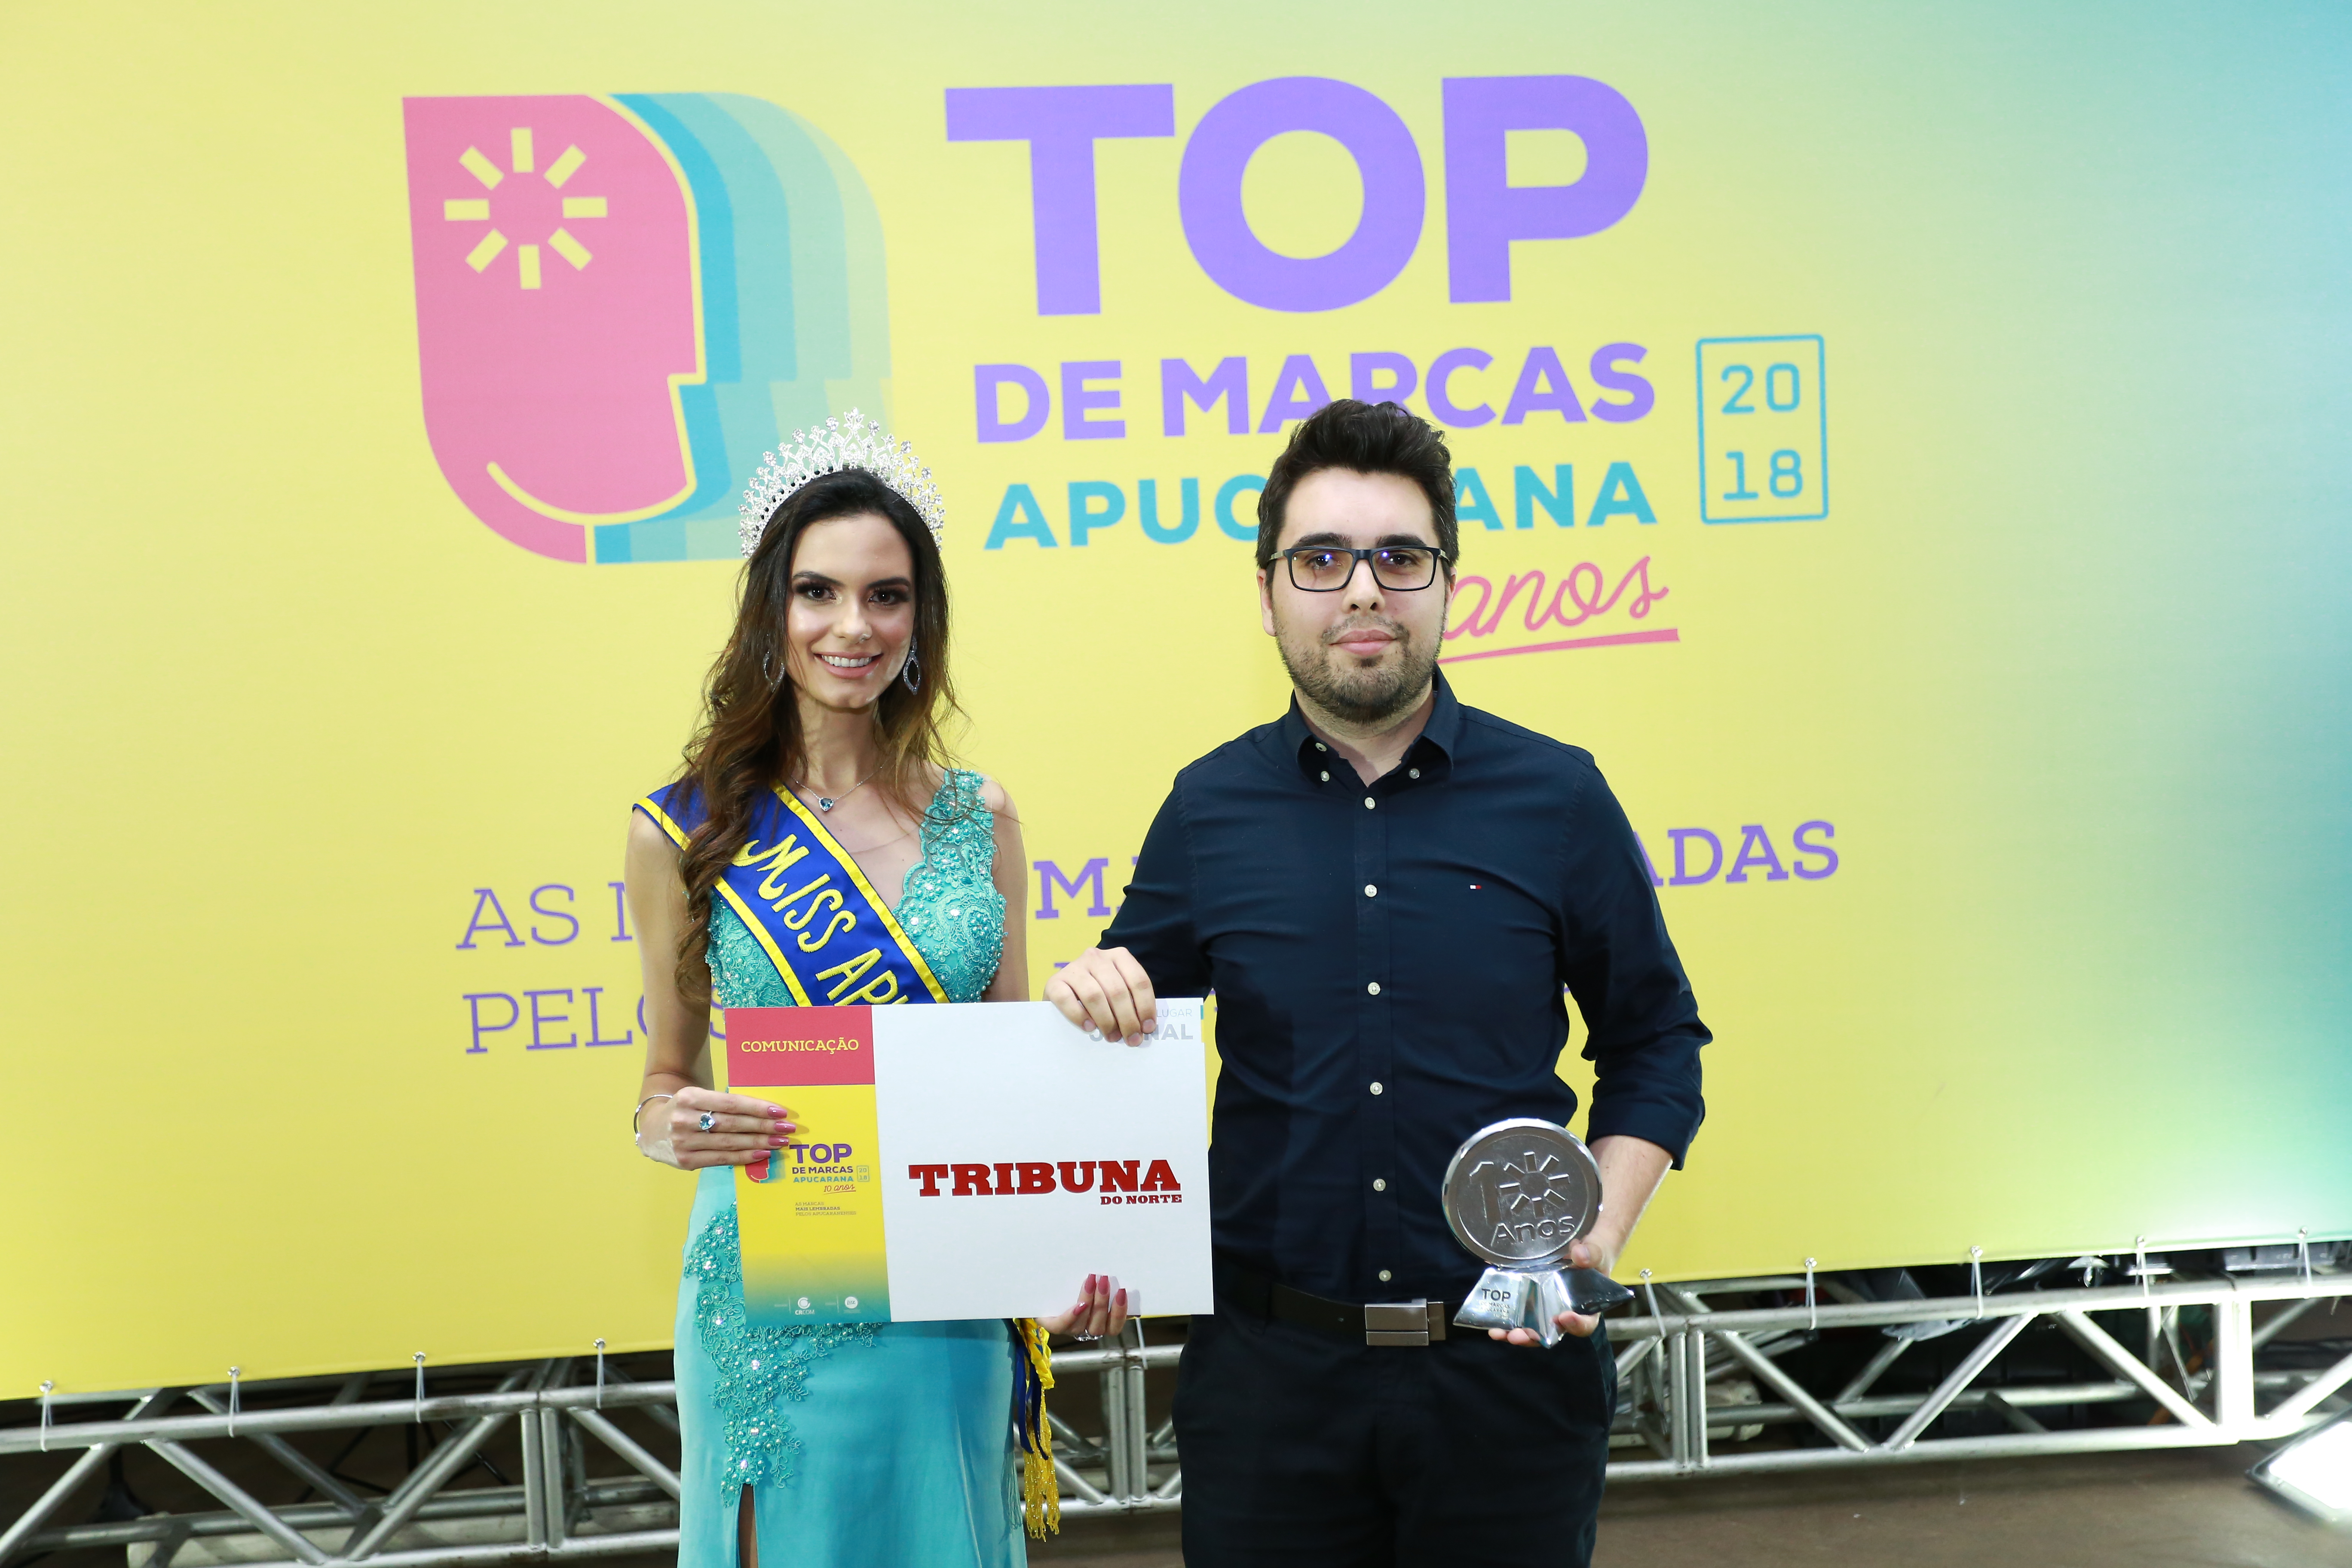 Gustavo Marçal de Oliveira recebeu o prêmio Top de Marcas e representou o jornal Tribuna do Norte e o site TN Online (Foto Nikkon Digital)